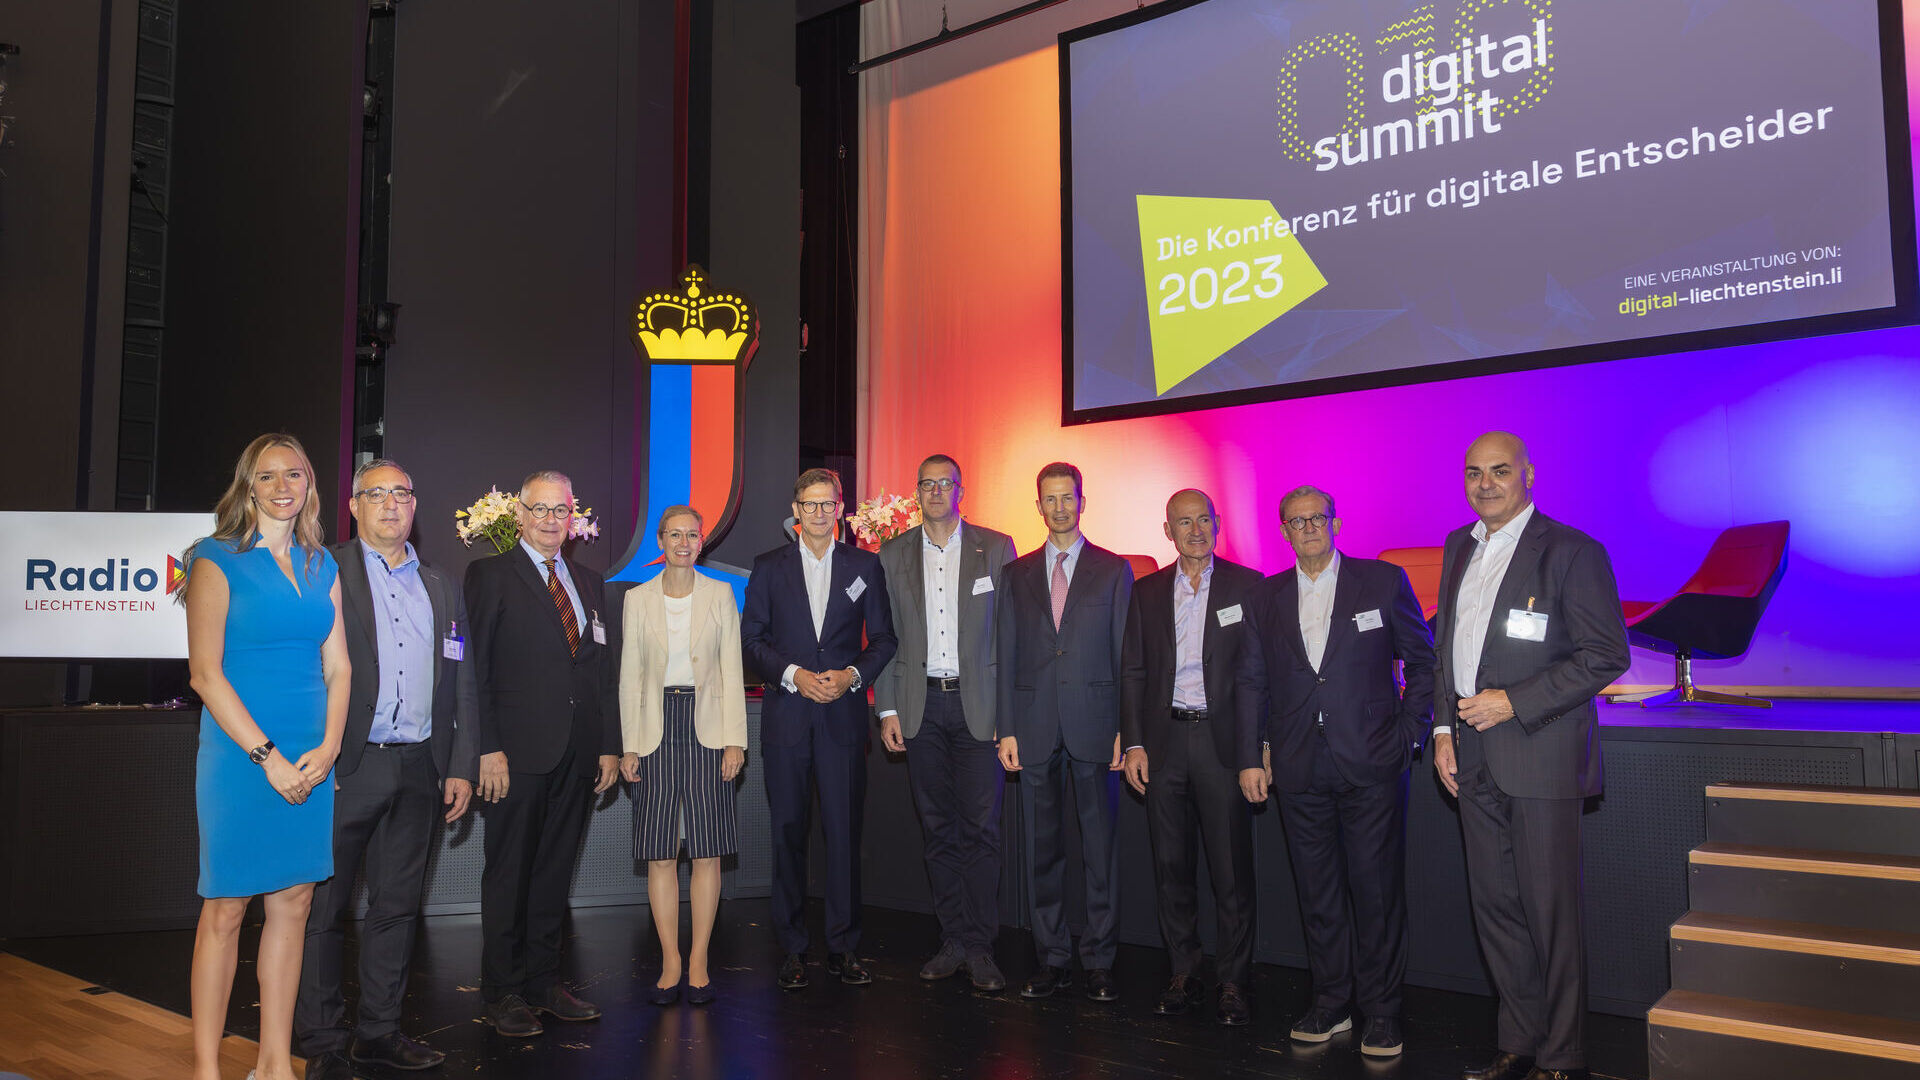 Digital Summit 2023: organizatörler ve konuşmacılar